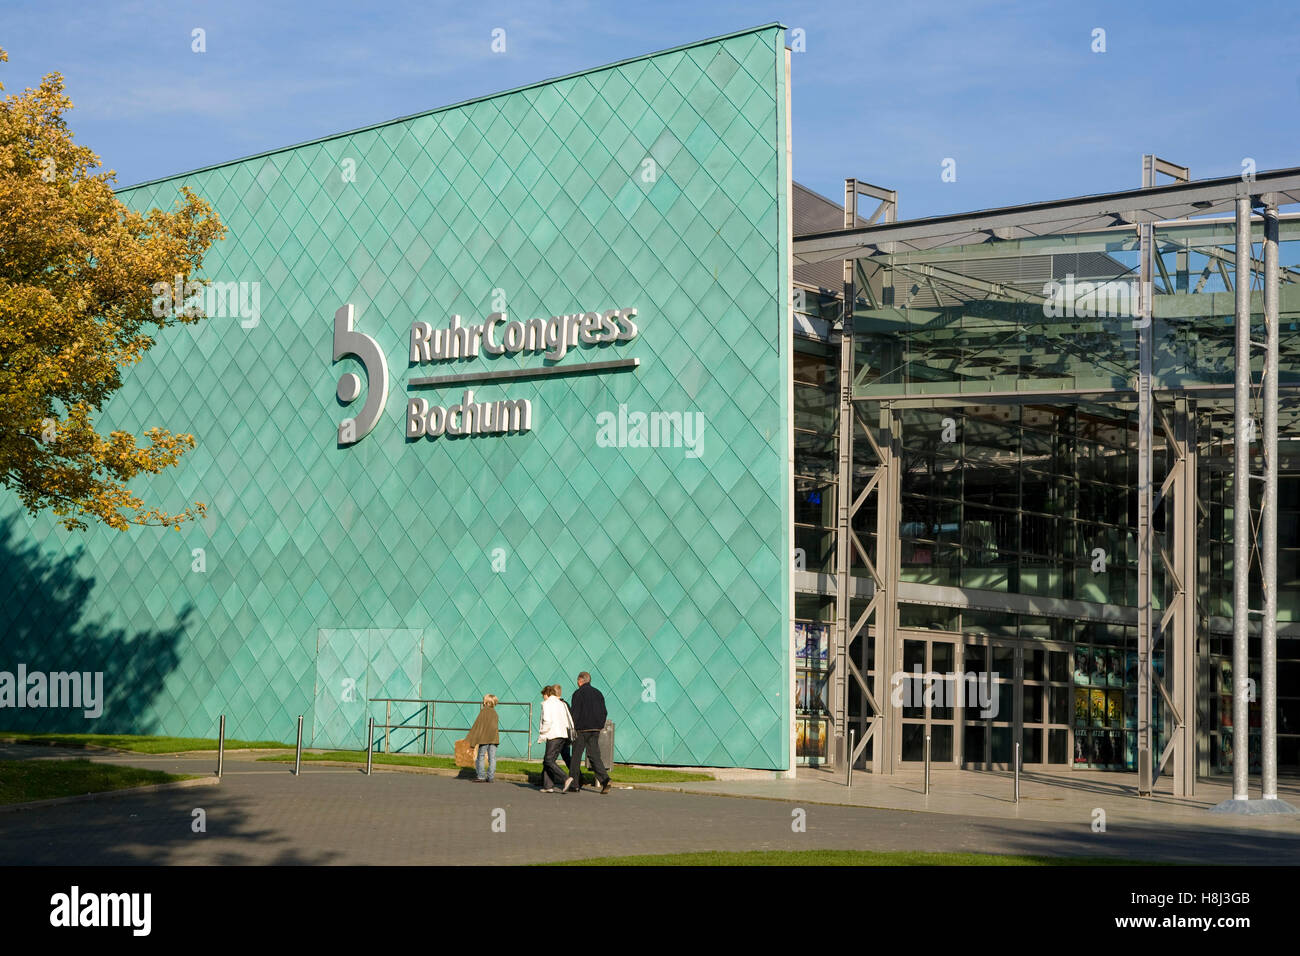 Deutschland, Ruhrgebiet, Bochum, das Kongresszentrum RuhrCongress. Stockfoto